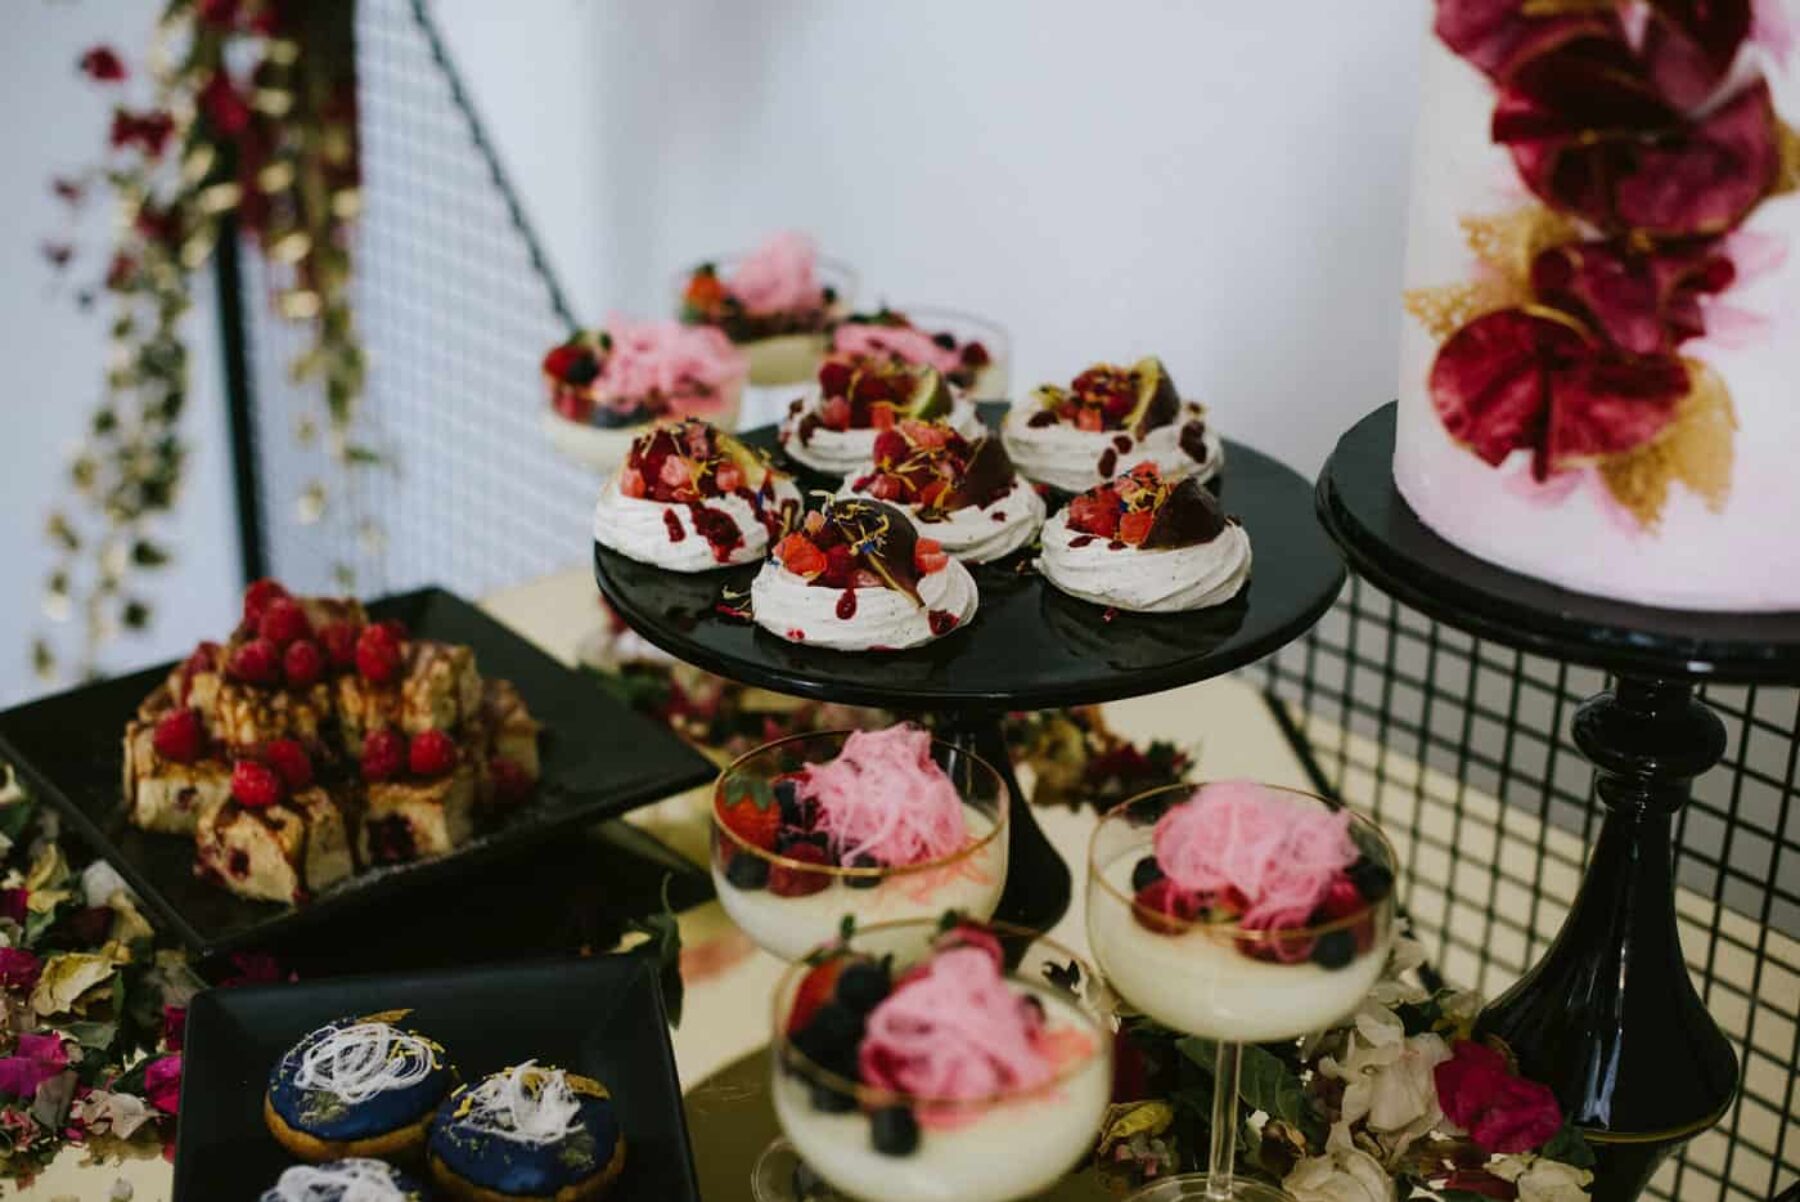 luxe dessert grazing table in rich magenta tones